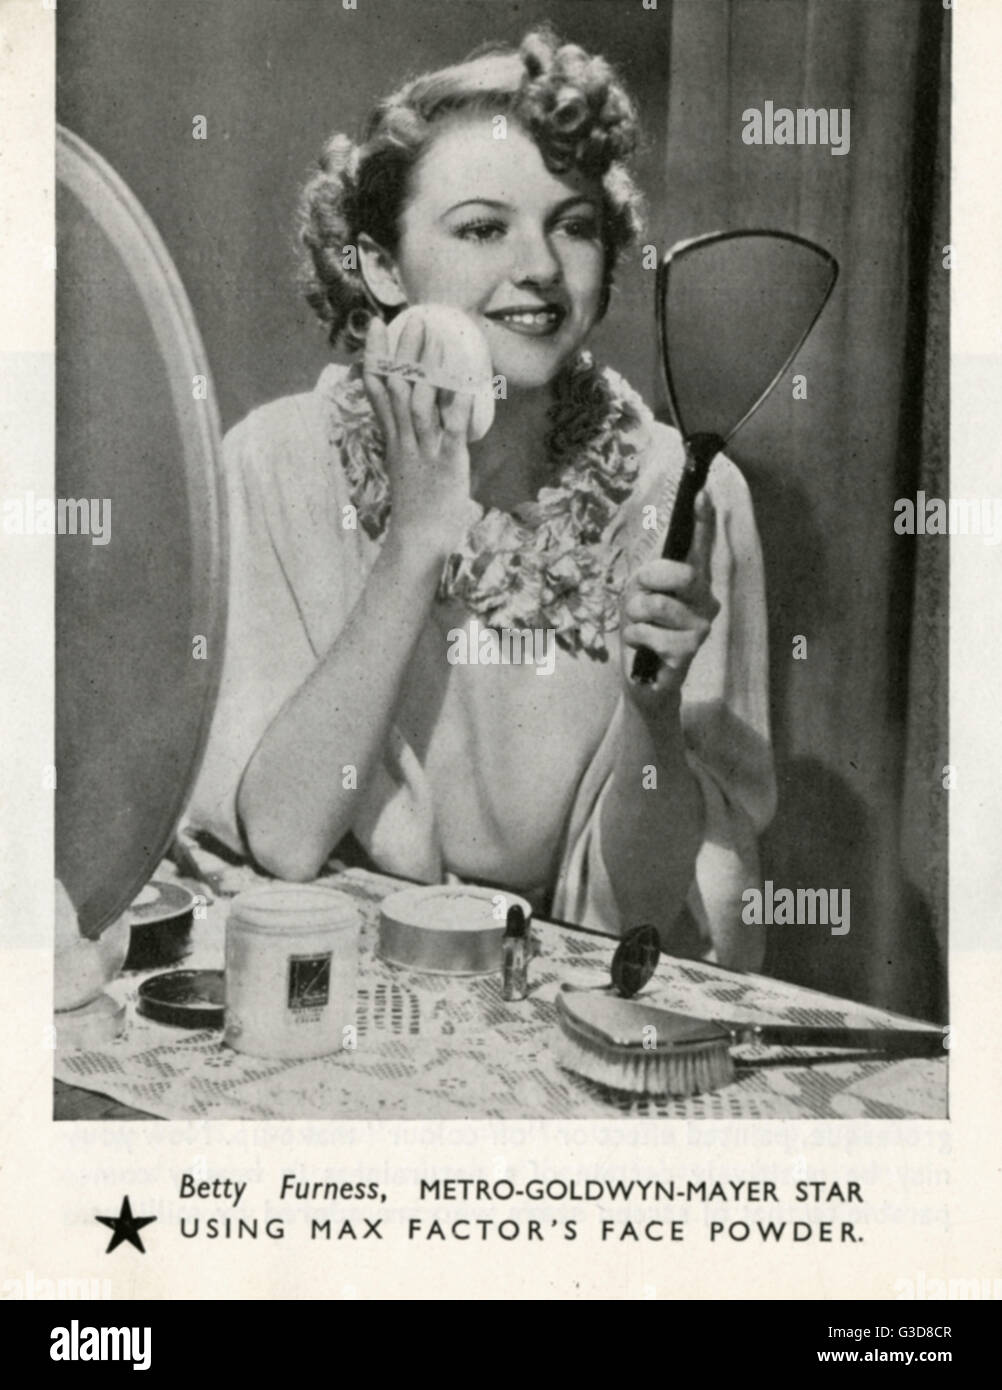 Elizabeth (Betty) María Furness (Enero 3, 1916 Abril 2, 1994), actriz estadounidense, defensor del consumidor y comentarista de asuntos actuales. Foto de aplicación de cosméticos Max Factor, mientras que ella era una estrella de películas de MGM en 1930, uno de una serie de actrices feature Foto de stock